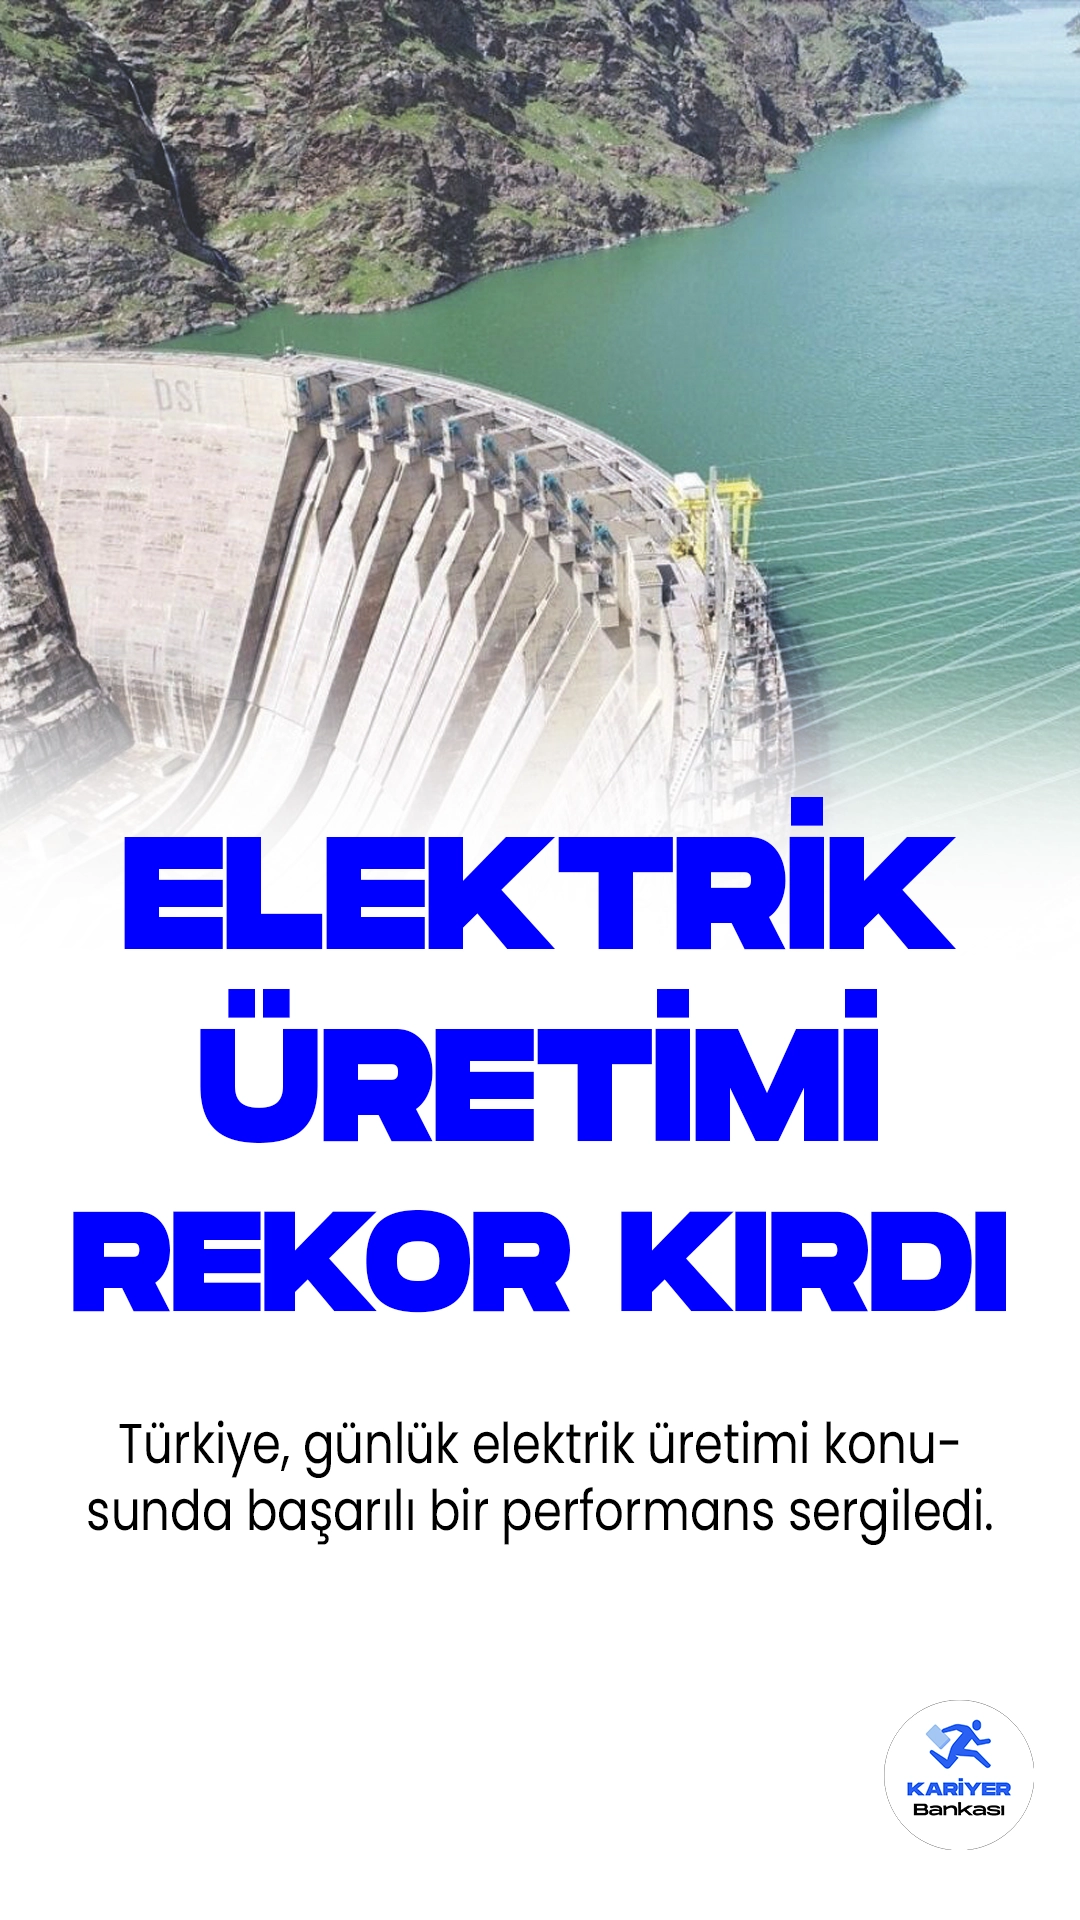 Türkiye'de Dün Günlük Elektrik Üretimi 711 Bin 794 Megavatsaat Oldu.Türkiye, dün günlük elektrik üretimi konusunda başarılı bir performans sergiledi. Türkiye Elektrik İletim AŞ'nin verilerine göre, ülke genelinde 711 bin 794 megavatsaat elektrik üretimi gerçekleştirildi. Bu üretimde, barajlı hidroelektrik santralleri yüzde 18,7'lik paylarıyla ilk sırayı aldı.